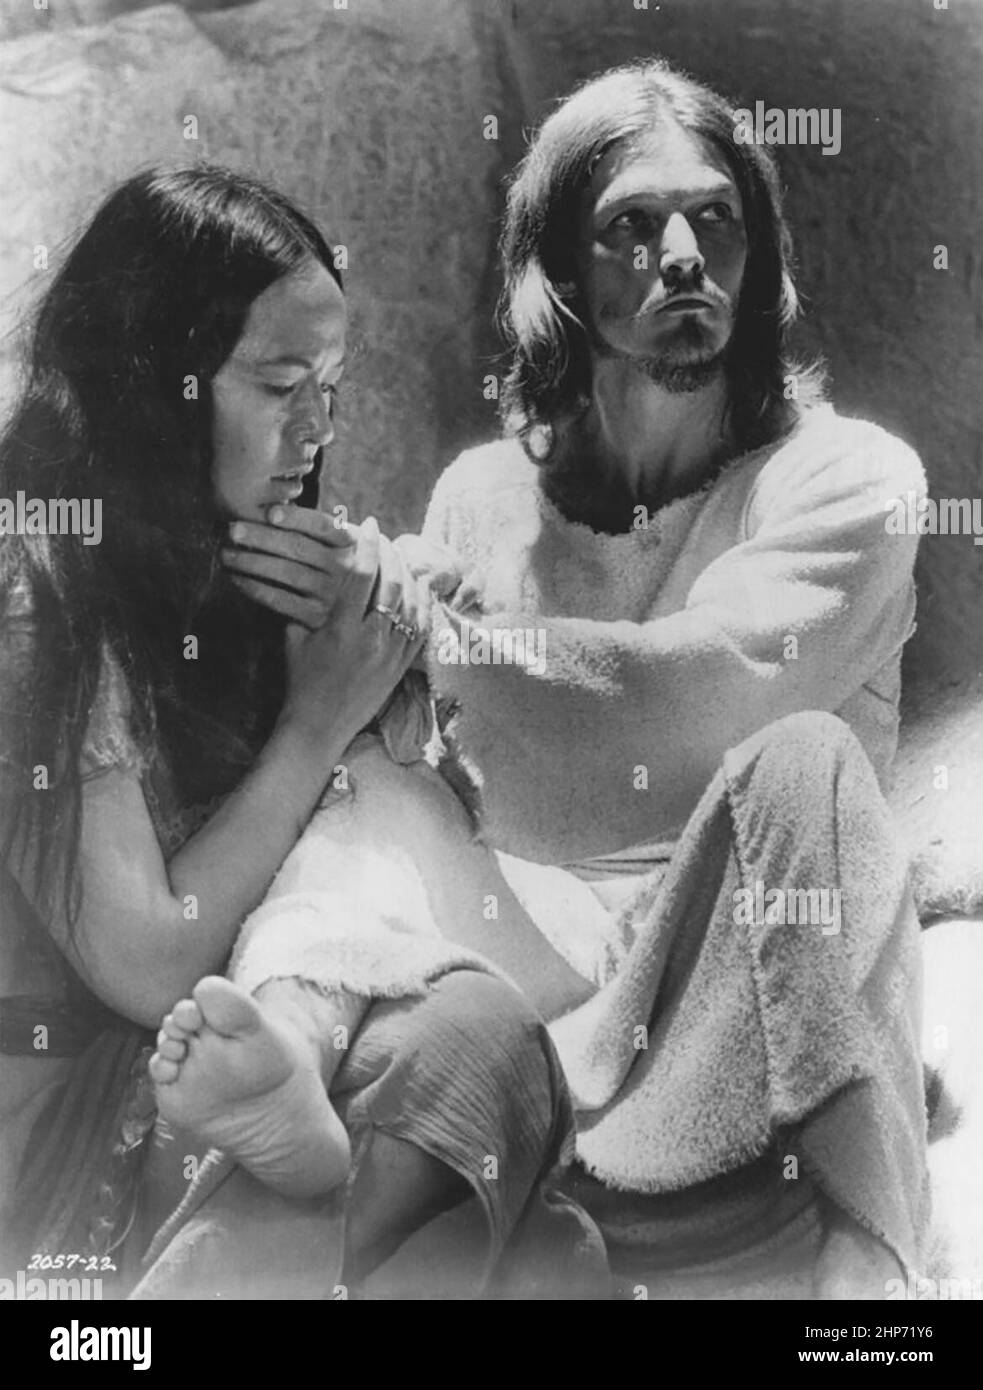 Werbefoto der amerikanischen Entertainer Yvonne Elliman und Ted Neeley, die ihre Rollen im Spielfilm Jesus Christ Superstar von 1973 promoten Stockfoto